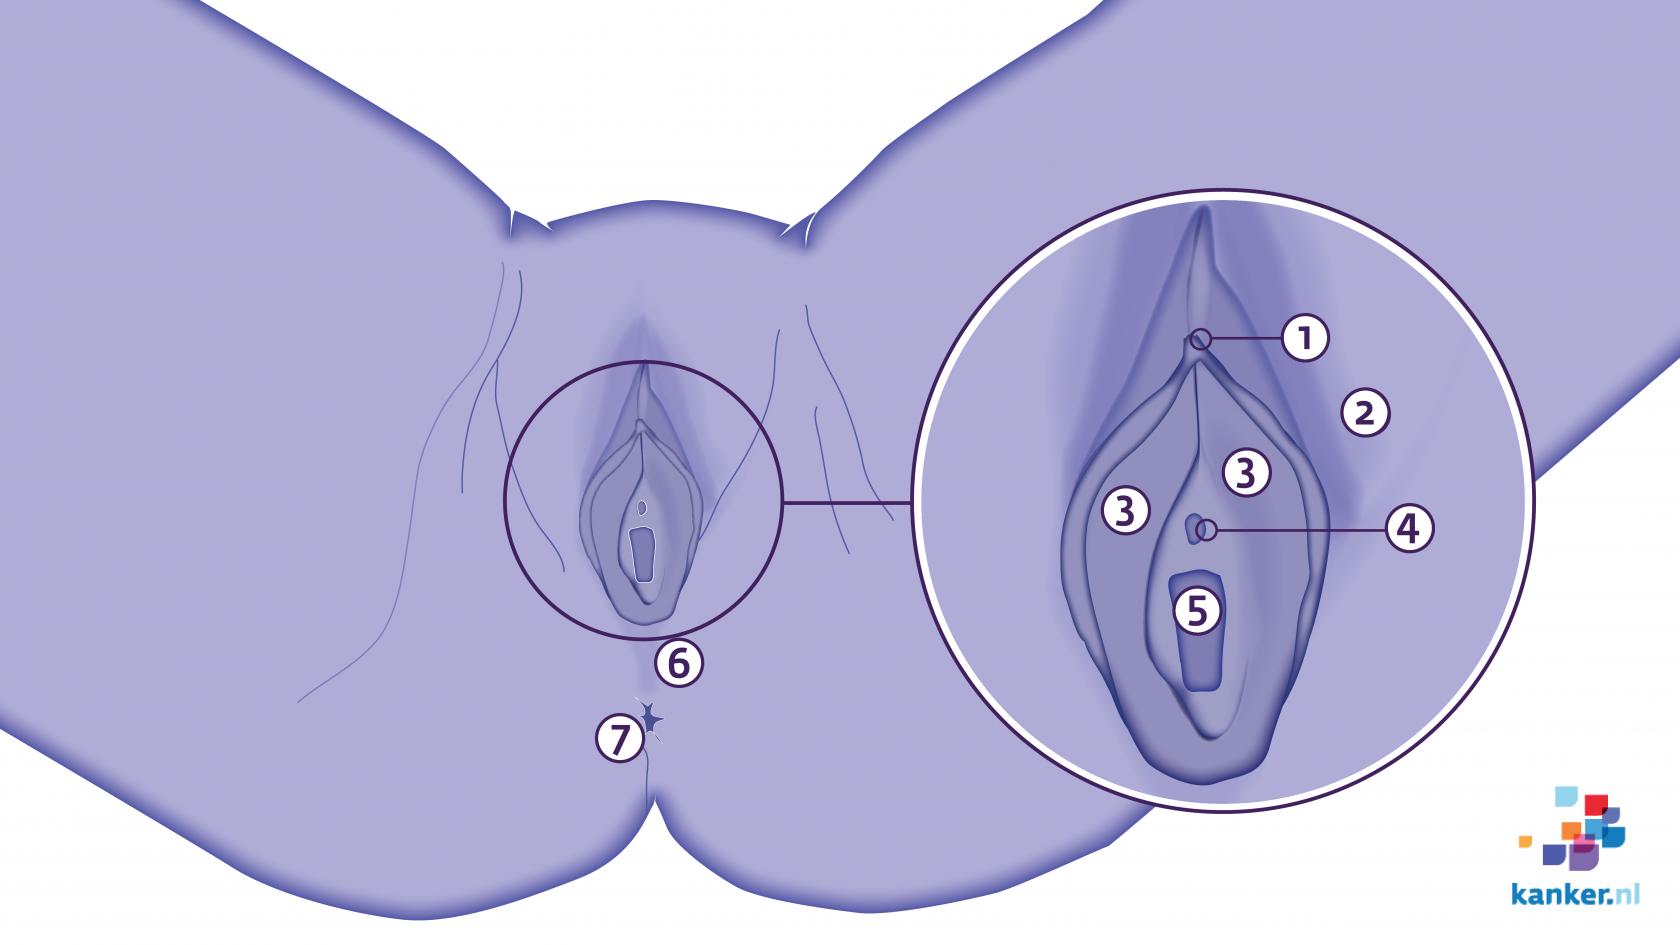 Pics vulva The Most